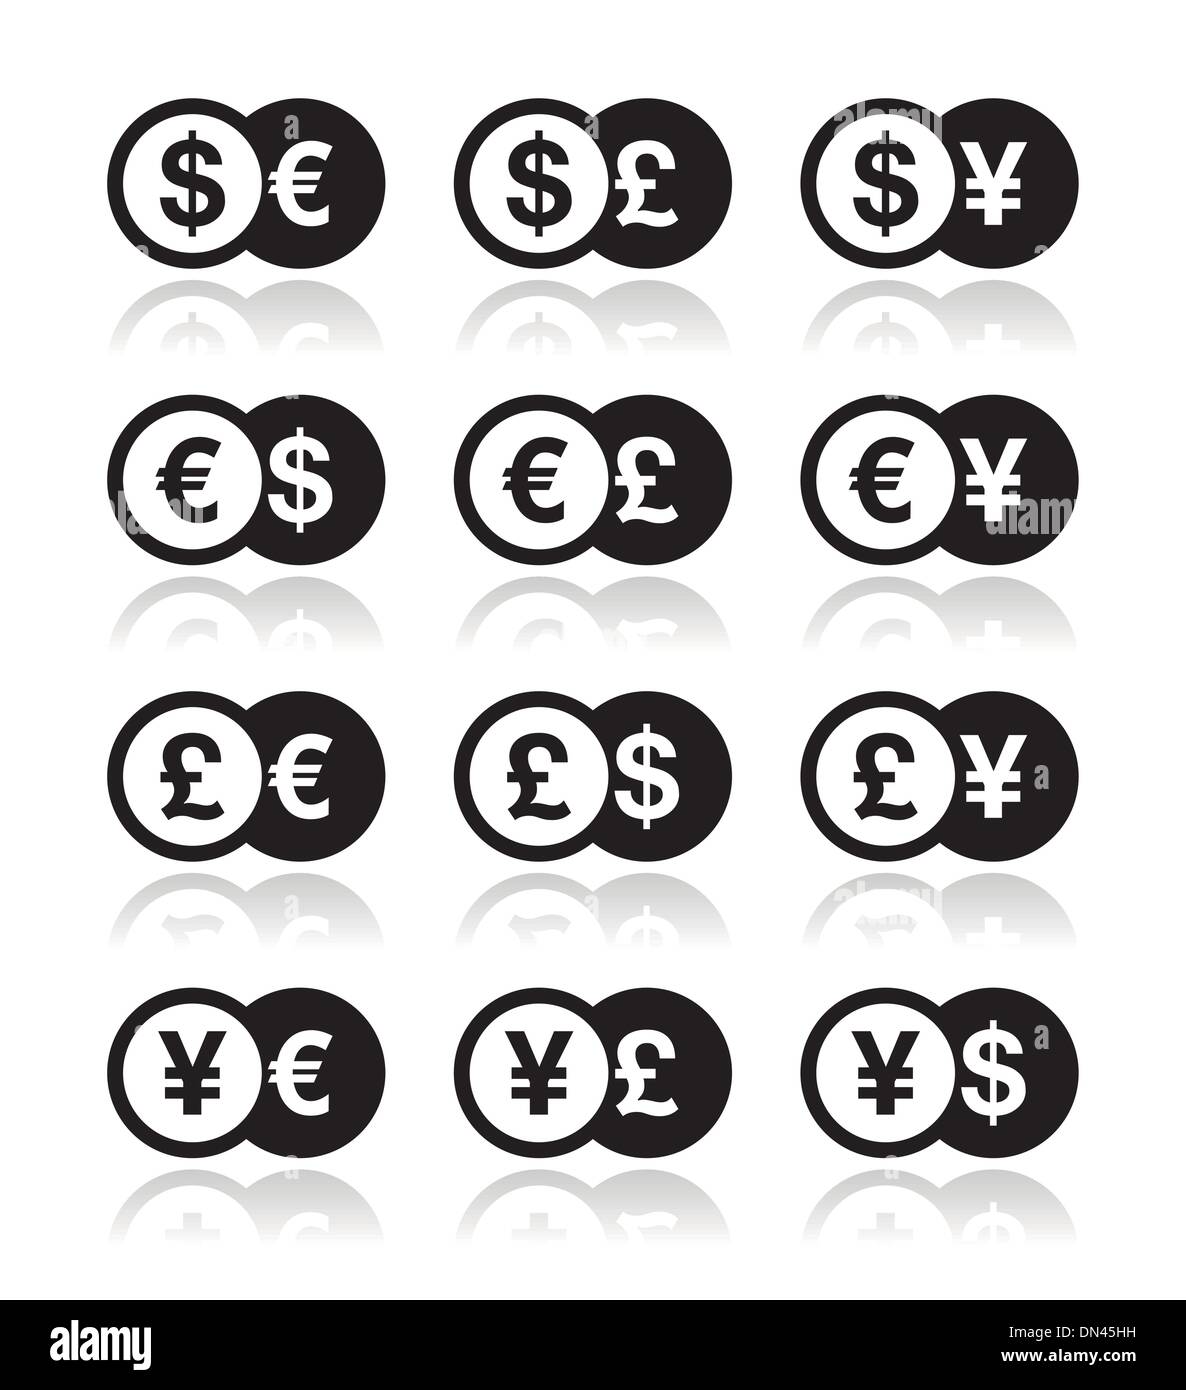 Währung-Austausch-Icons set - Dollar, Euro, Yen, Pfund Stock Vektor